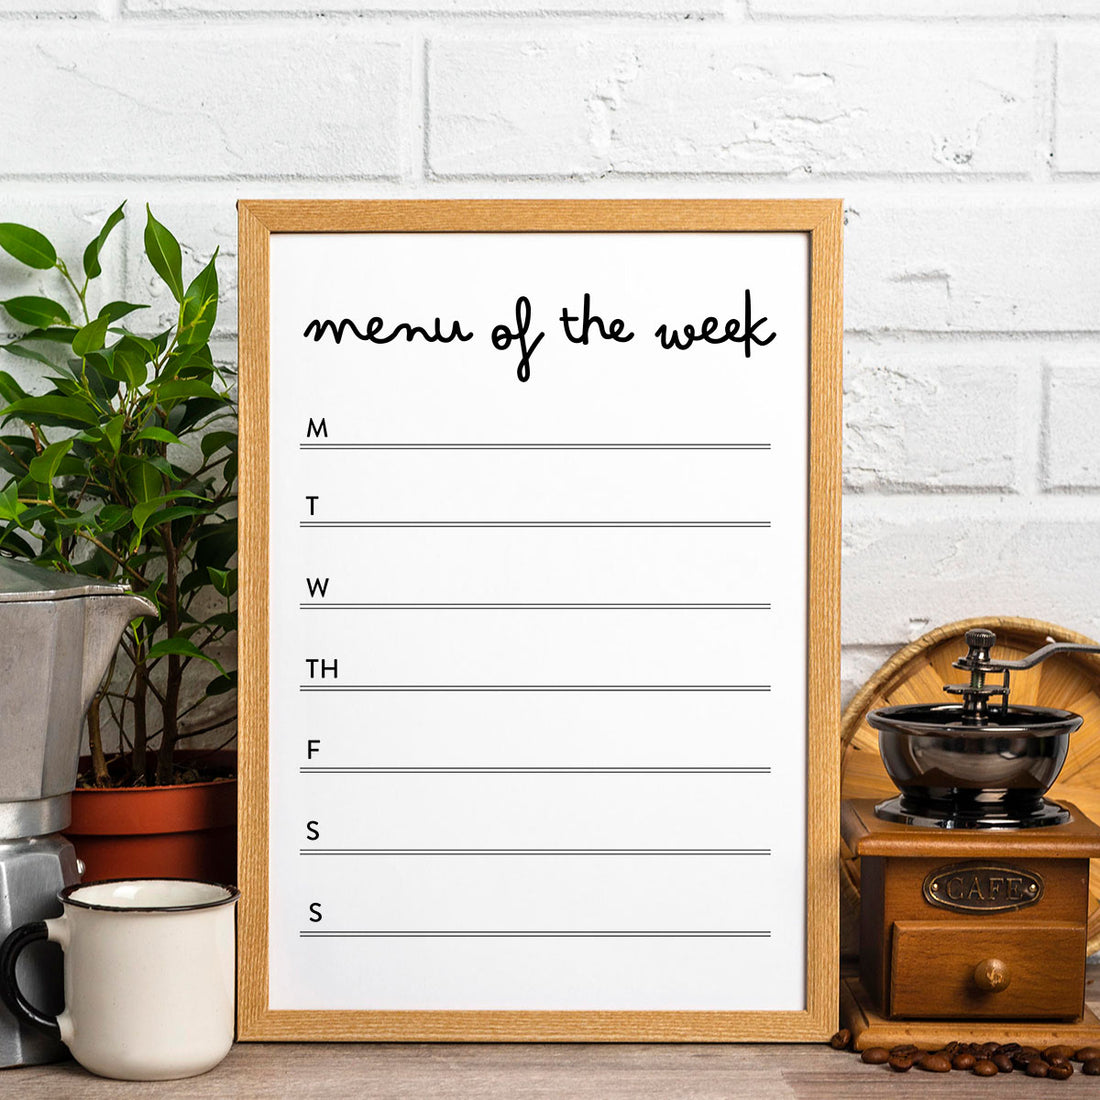 Printable 1-Week Dinner Menu - Menu of the Week